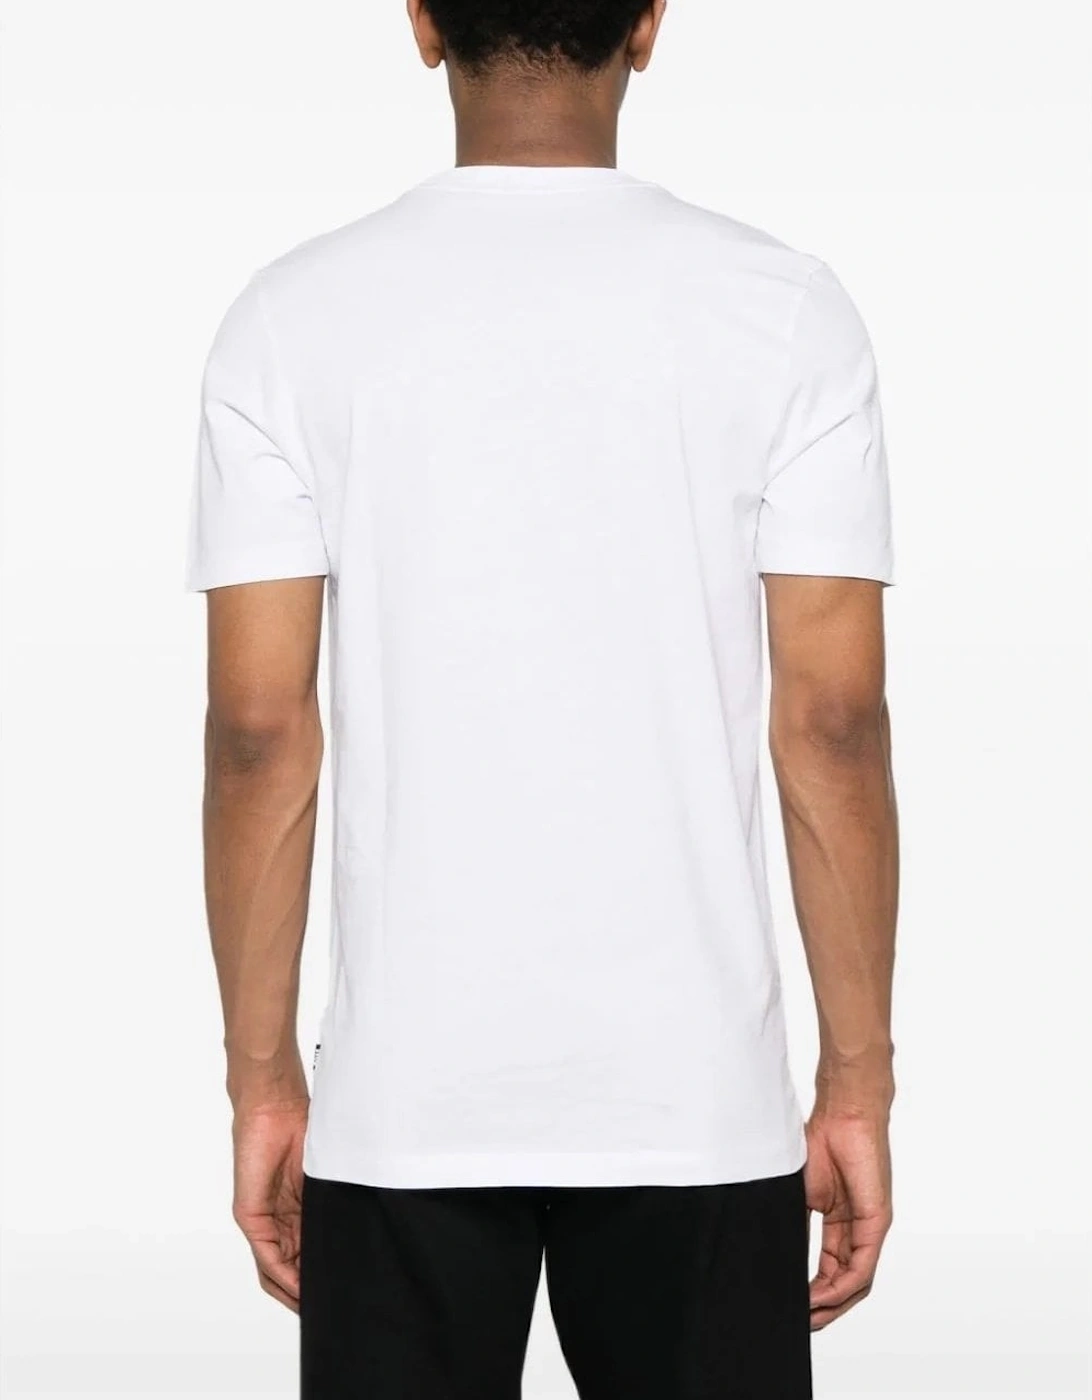 Tiburt 427 T-shirt White